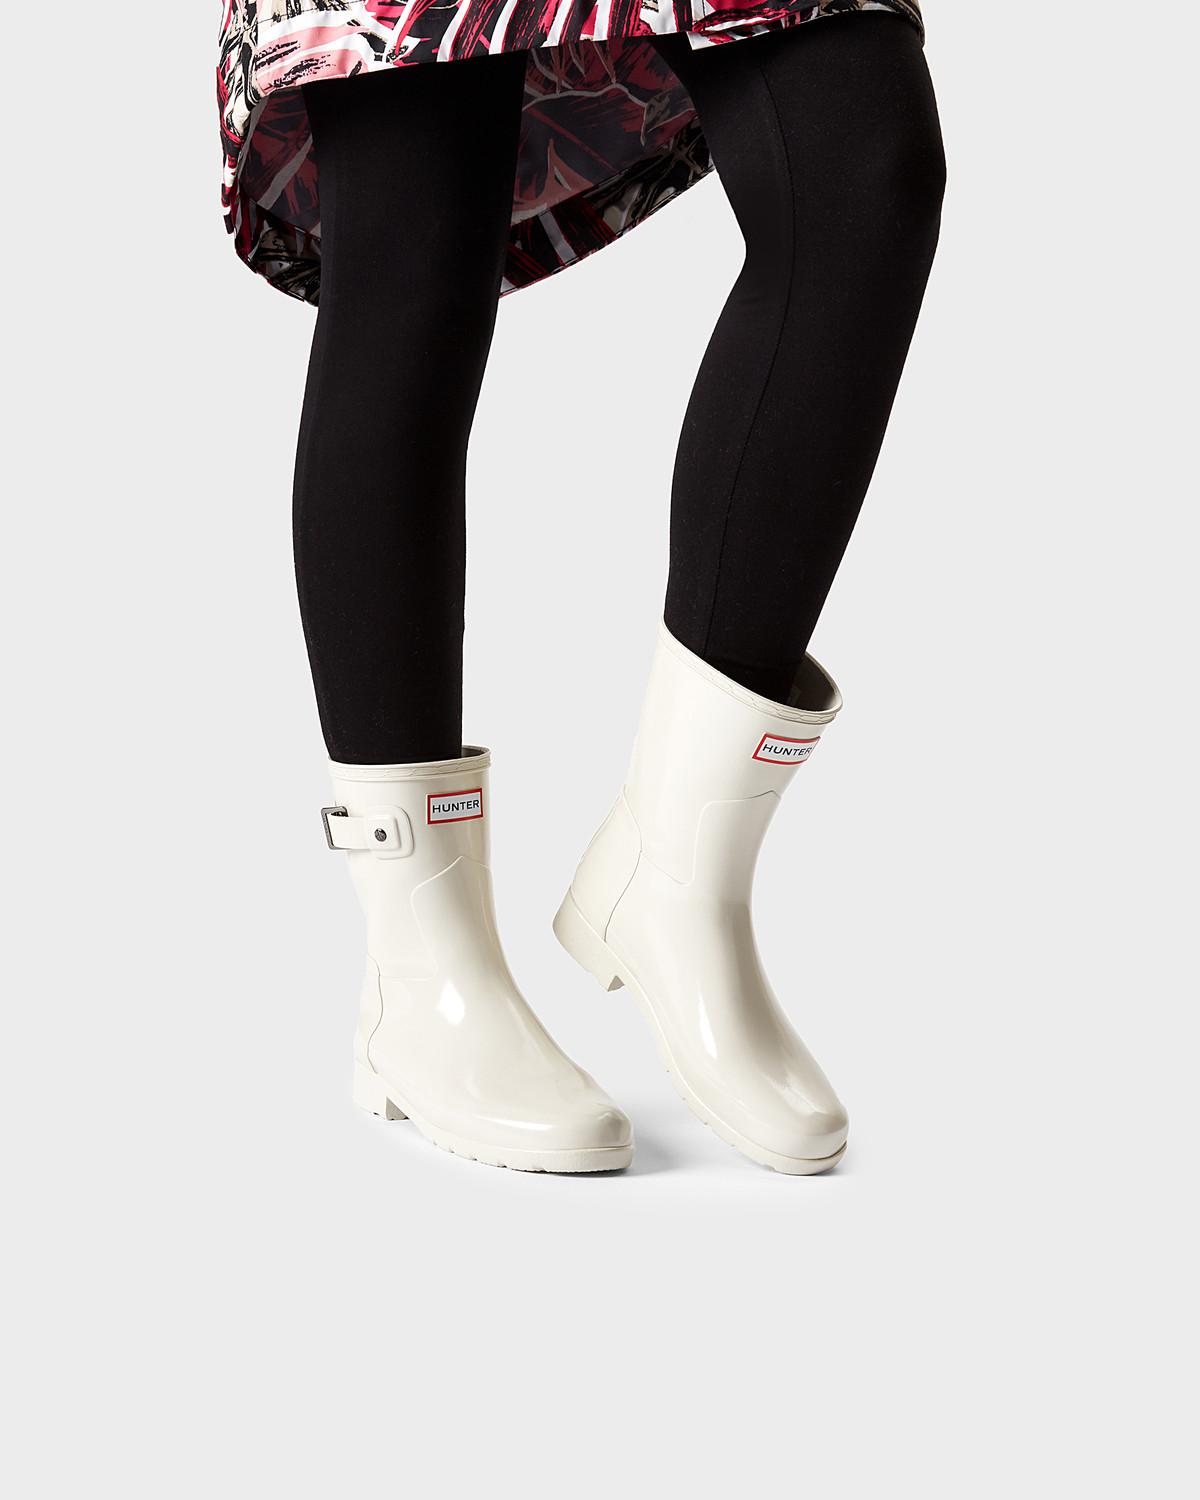 short white hunter rain boots